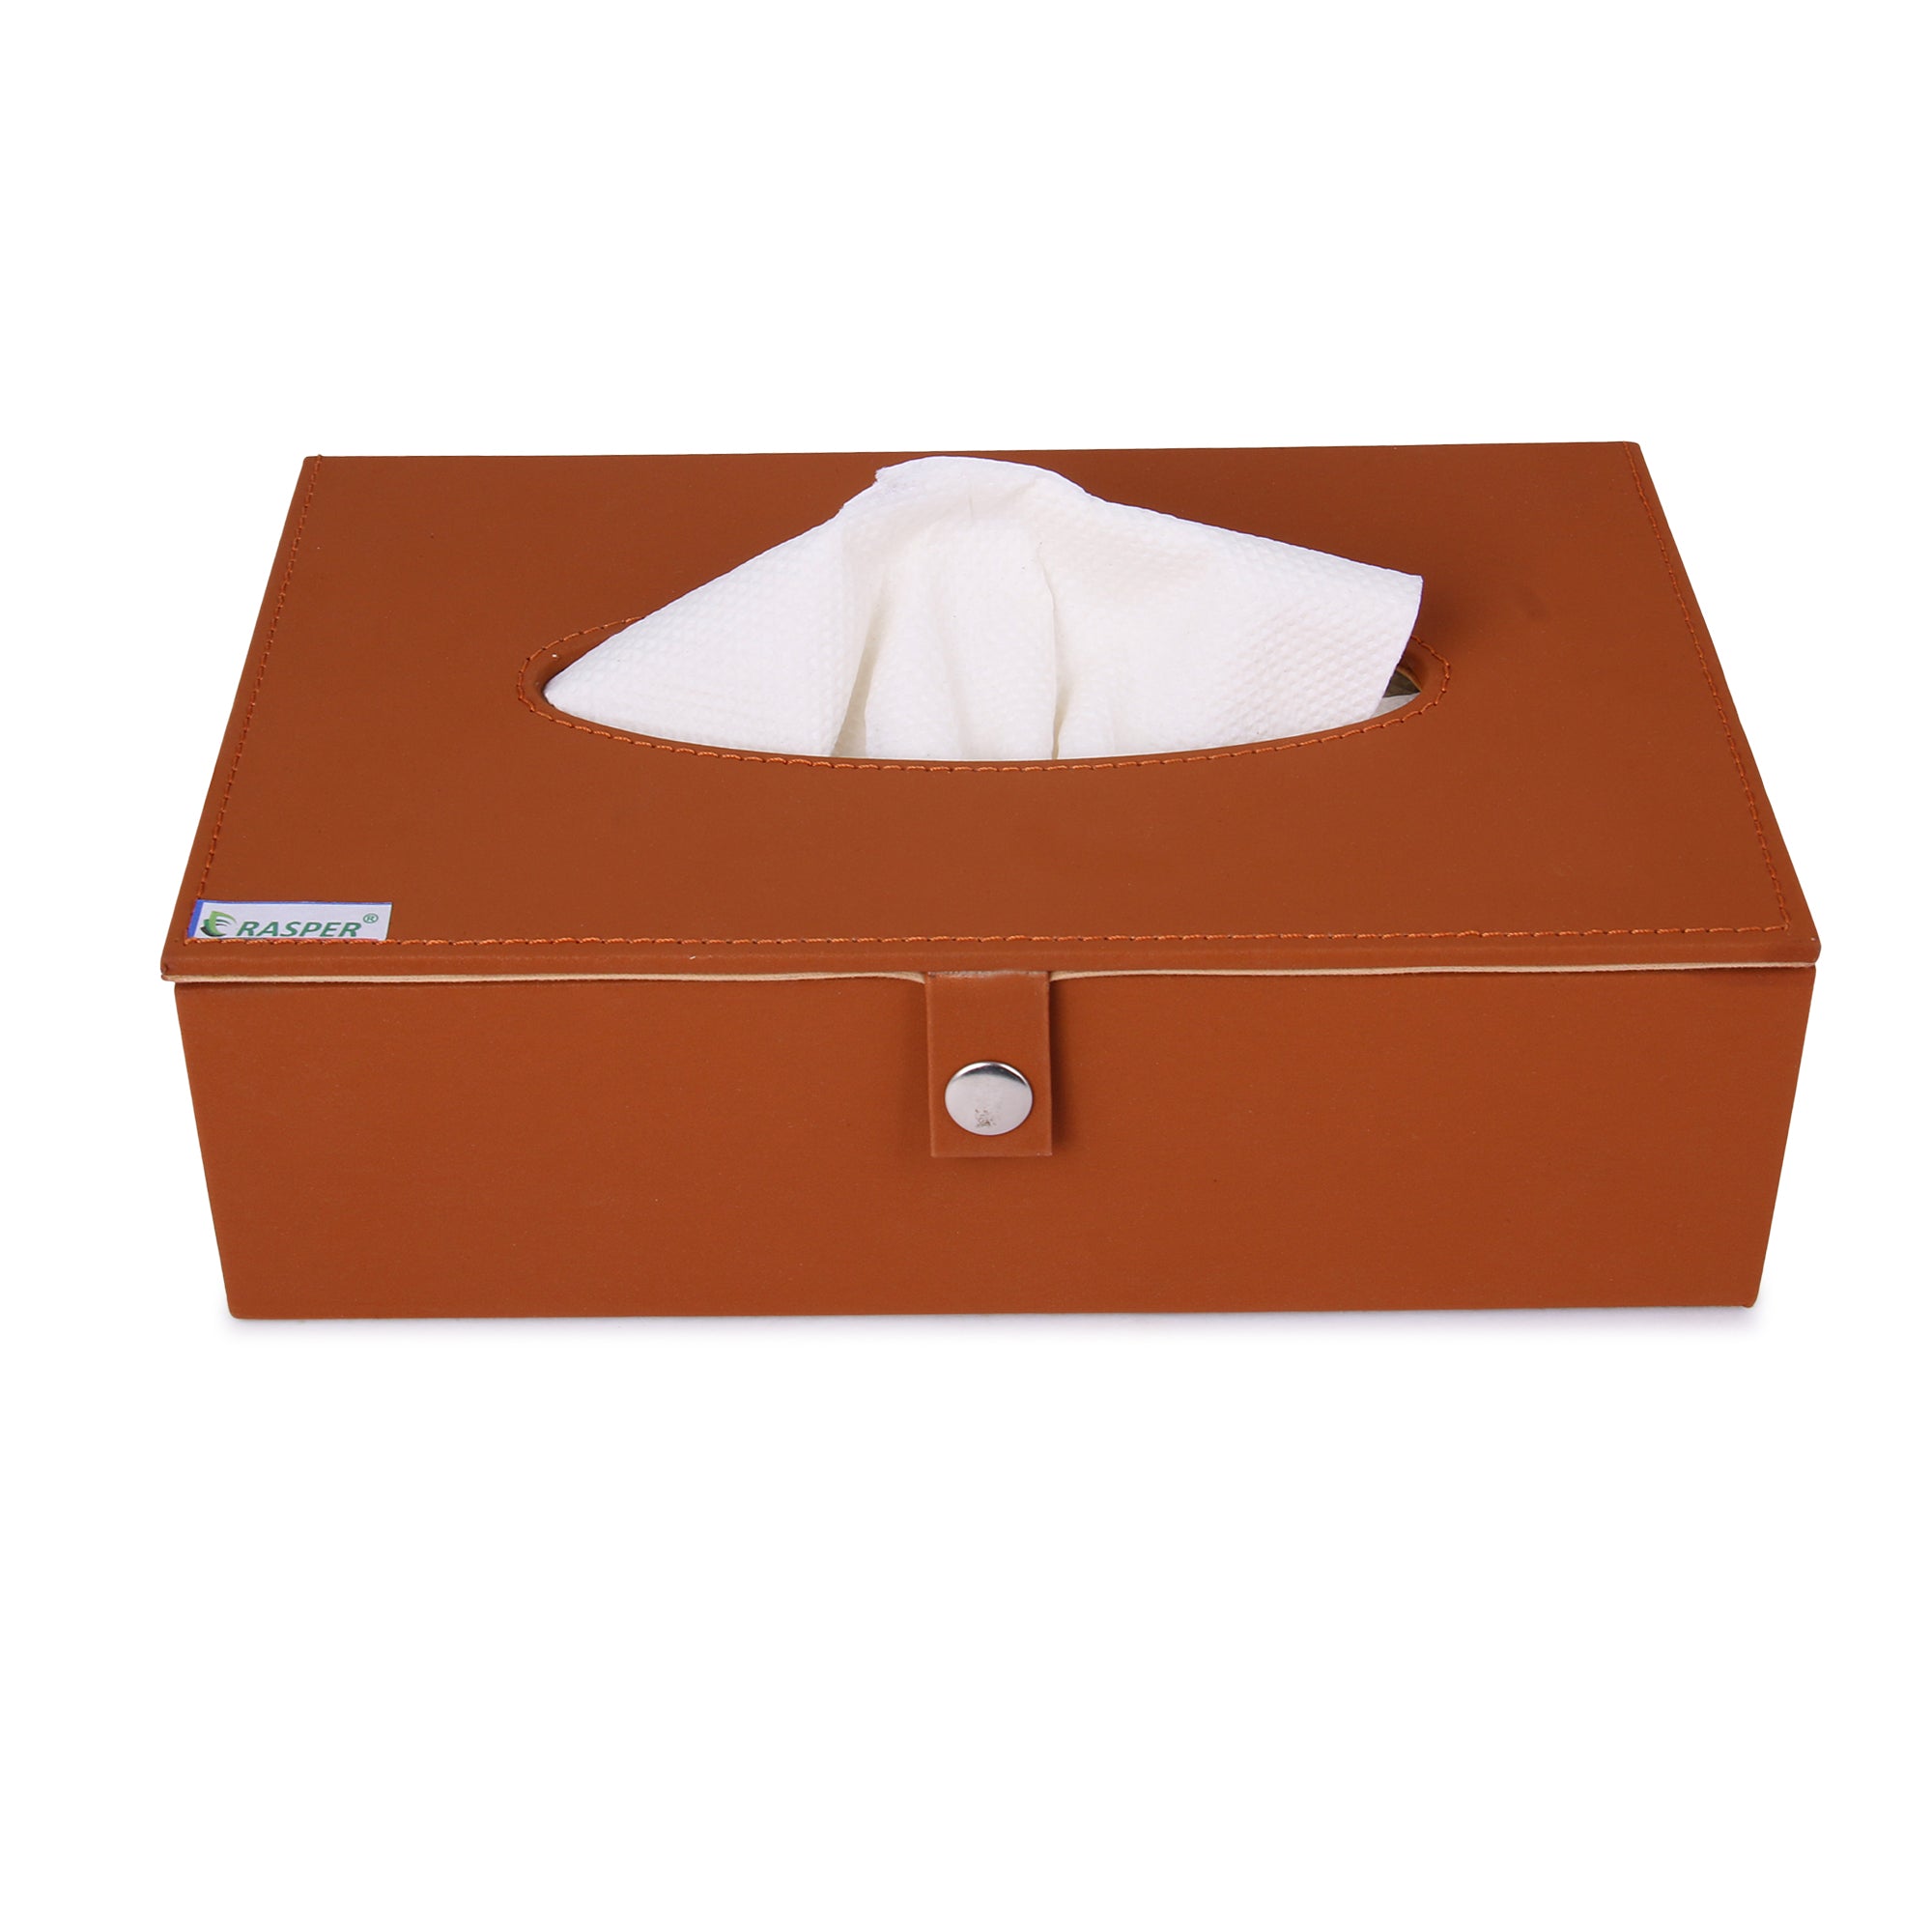 YFXOHAR Leather Tissue Box Holder/Rectangular Napkin Holder/Tissue Paper  Case Dispenser/Facial Tissue Holder with Magnetic Bottom for Home Office Car